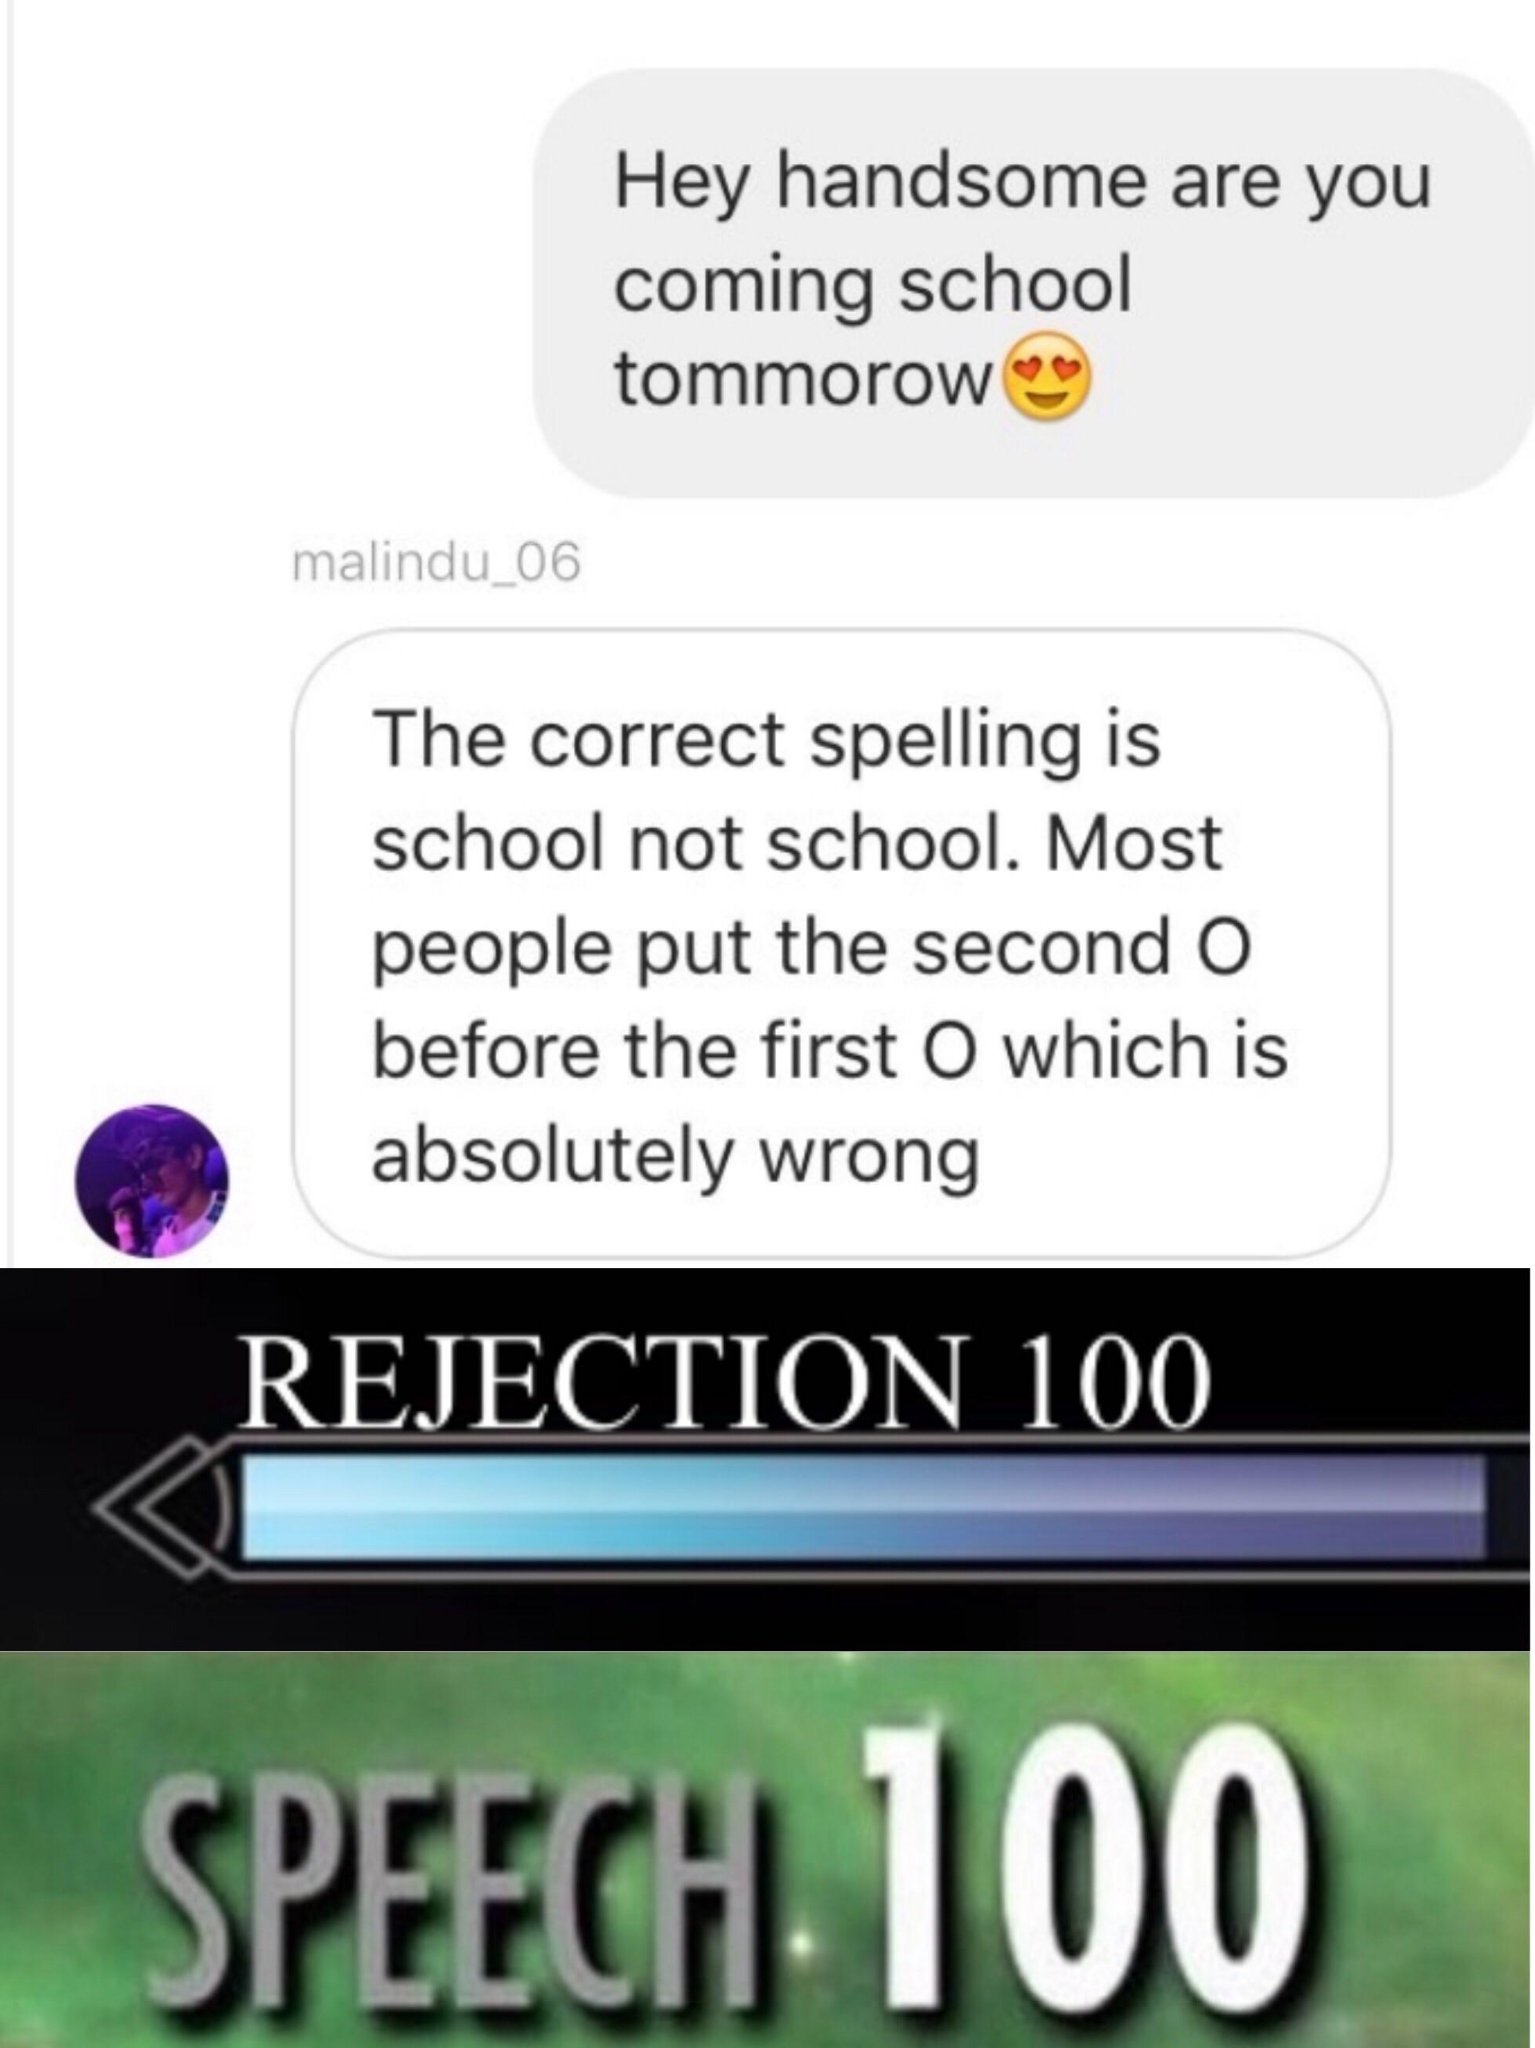 Rejection 100 - meme